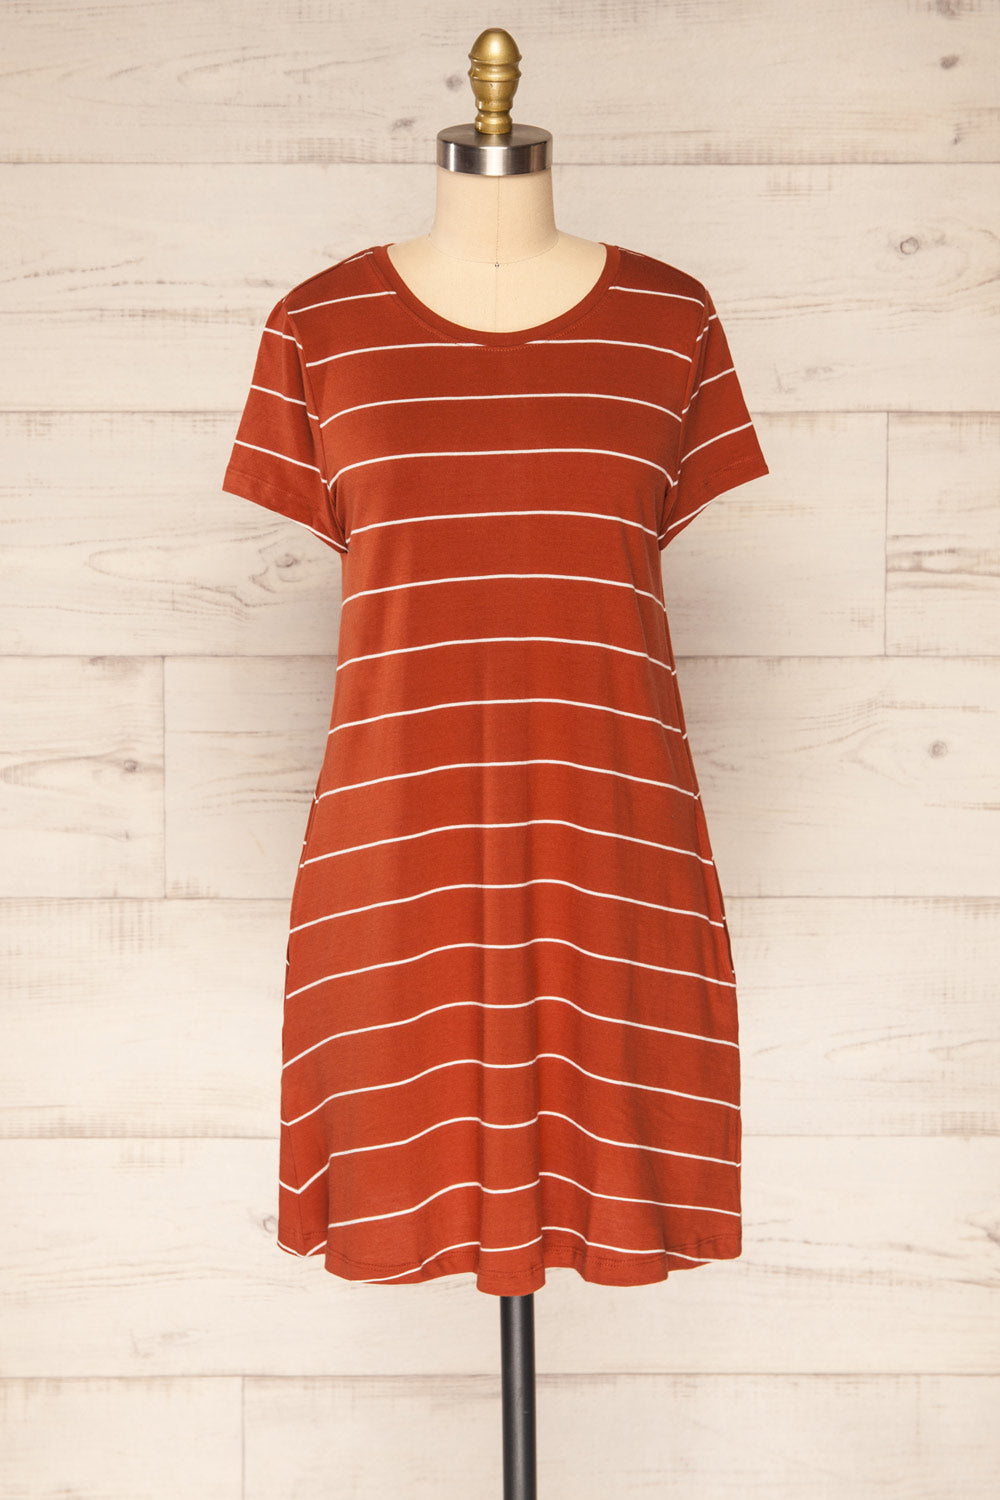 Urlau Stripes Rust Organic Cotton T-Shirt Dress | La petite garçonne front view